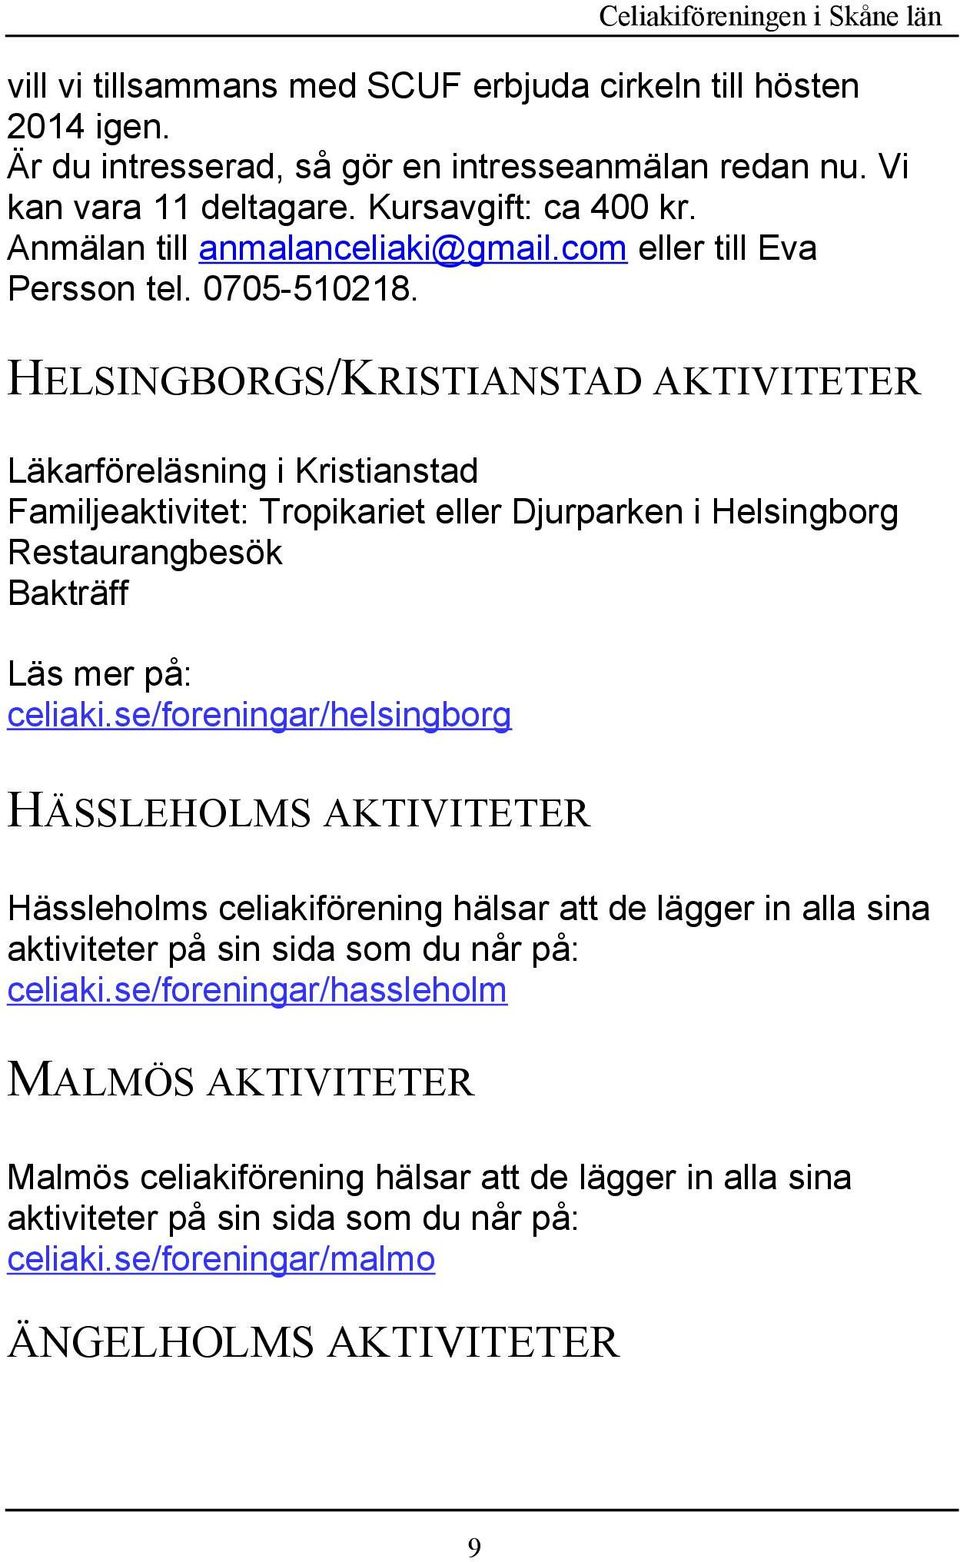 HELSINGBORGS/KRISTIANSTAD AKTIVITETER Läkarföreläsning i Kristianstad Familjeaktivitet: Tropikariet eller Djurparken i Helsingborg Restaurangbesök Bakträff Läs mer på: celiaki.